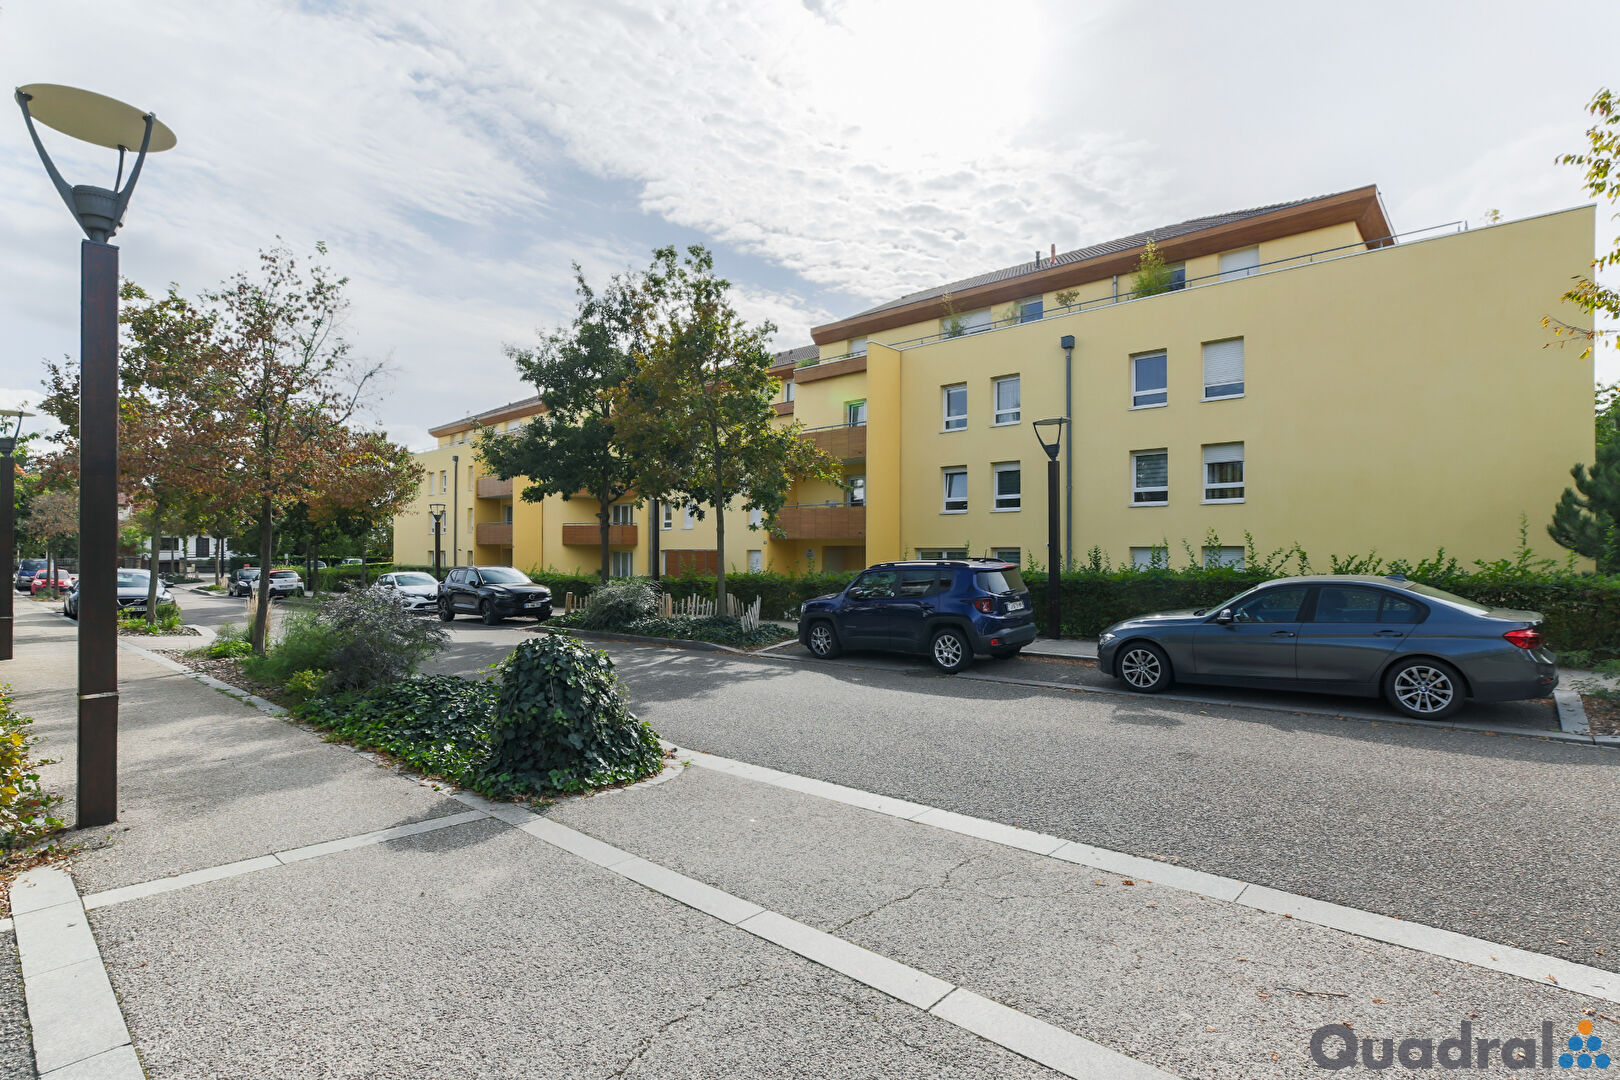 Vente Appartement 71m² 3 Pièces à Montigny-lès-Metz (57950) - Quadral